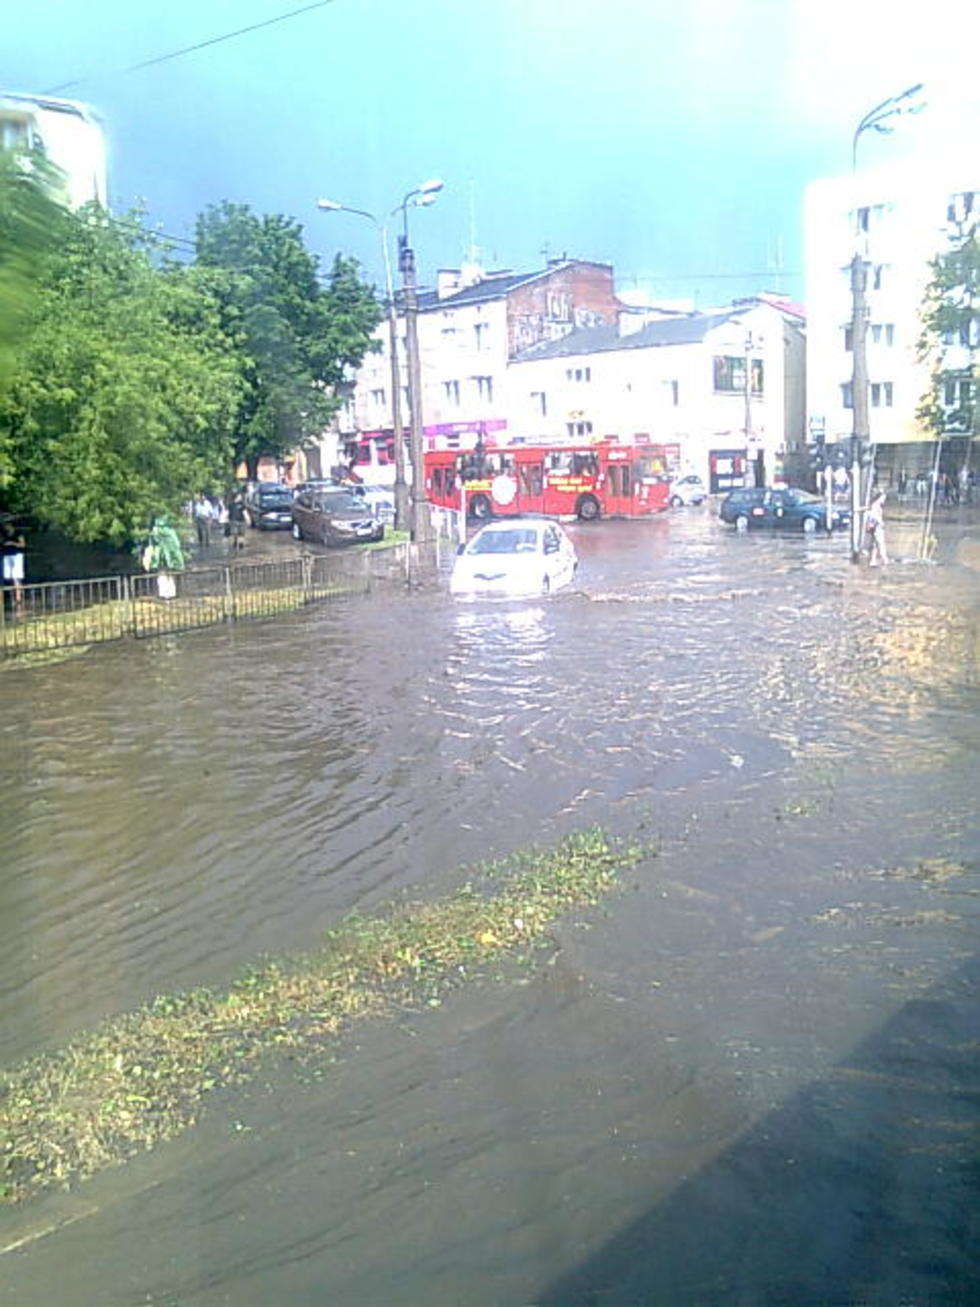  Ulica Gleboka w Lublinie widziana z trolejbusu 153